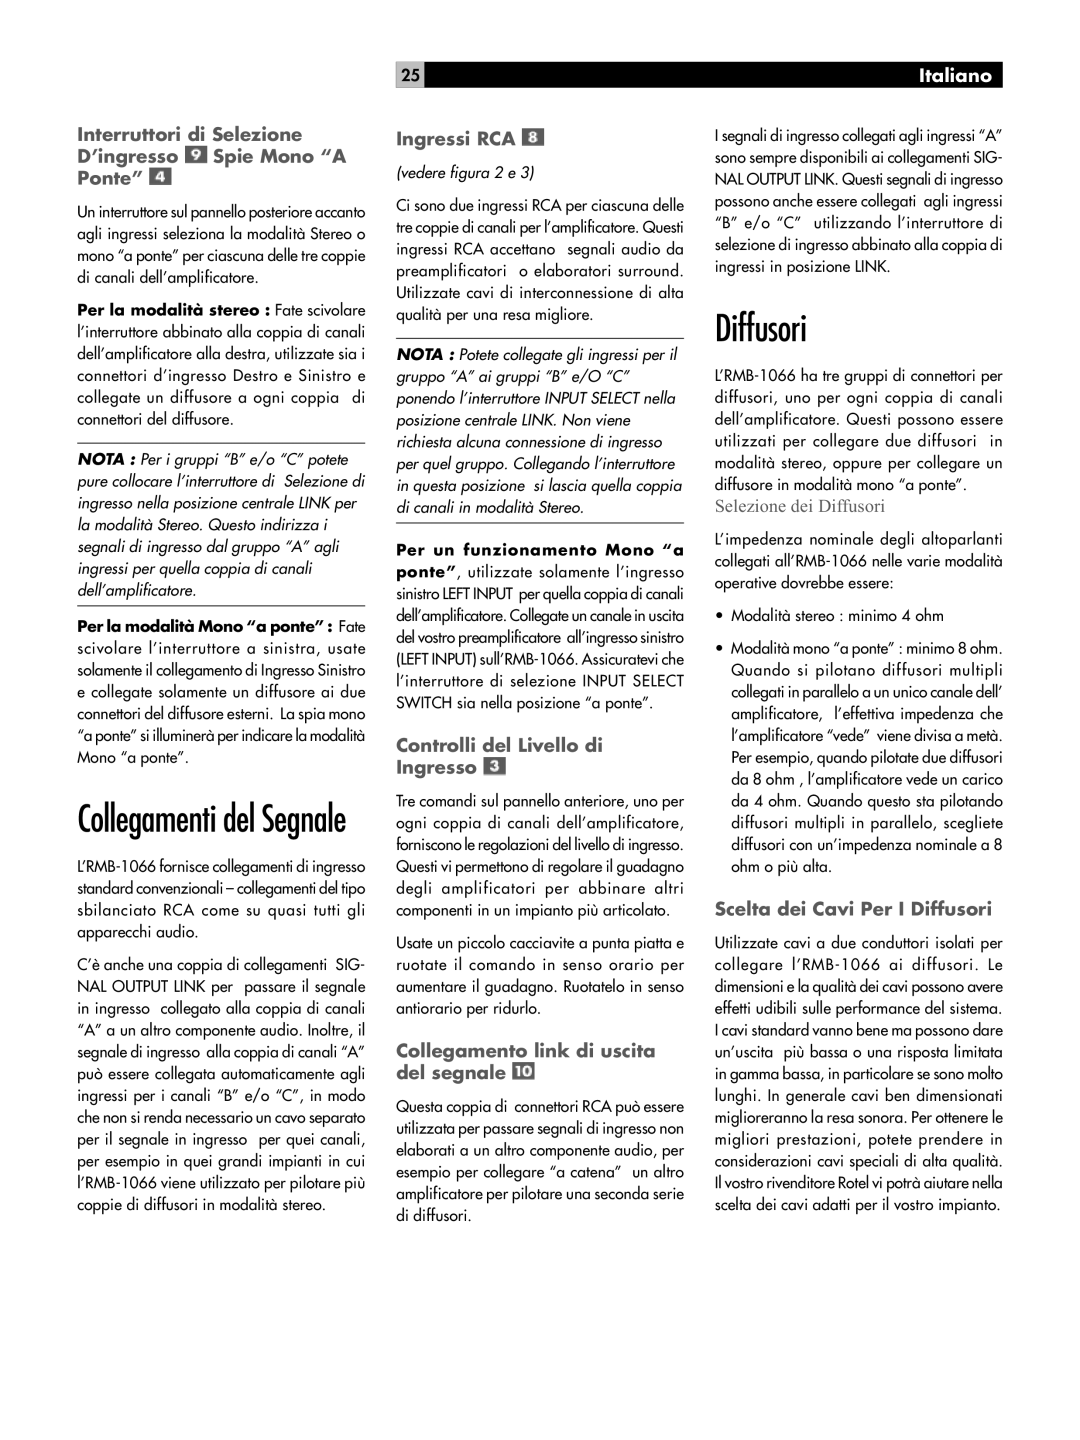 Rotel RMB-1066 owner manual Diffusori, Collegamenti del Segnale, Ingressi RCA, Controlli del Livello di Ingresso, Italiano 